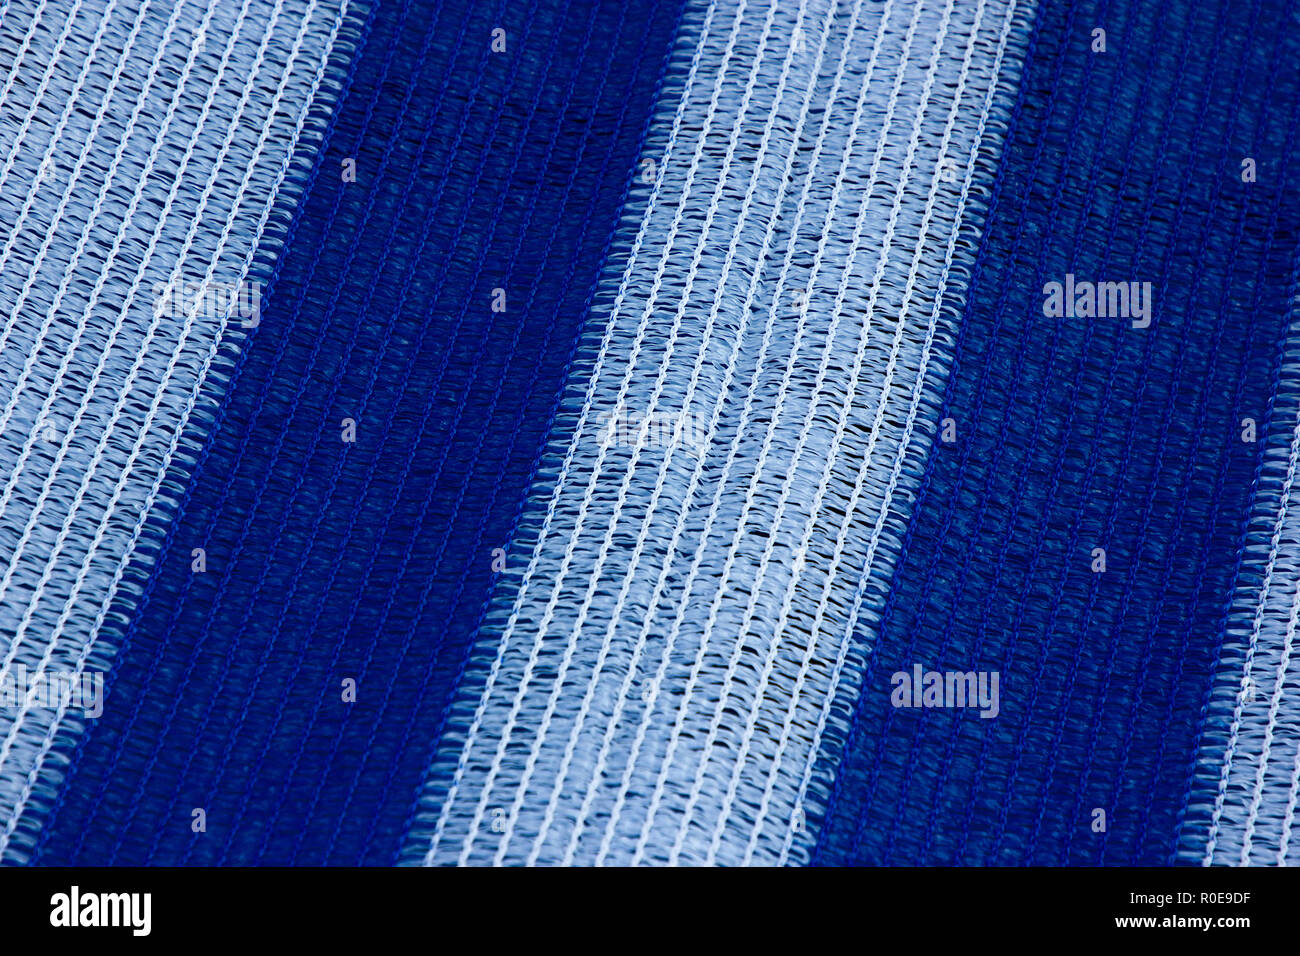 Eine schöne, weiße und blau gestreiften Textur eines Bootes Abdeckung am Meer Stockfoto